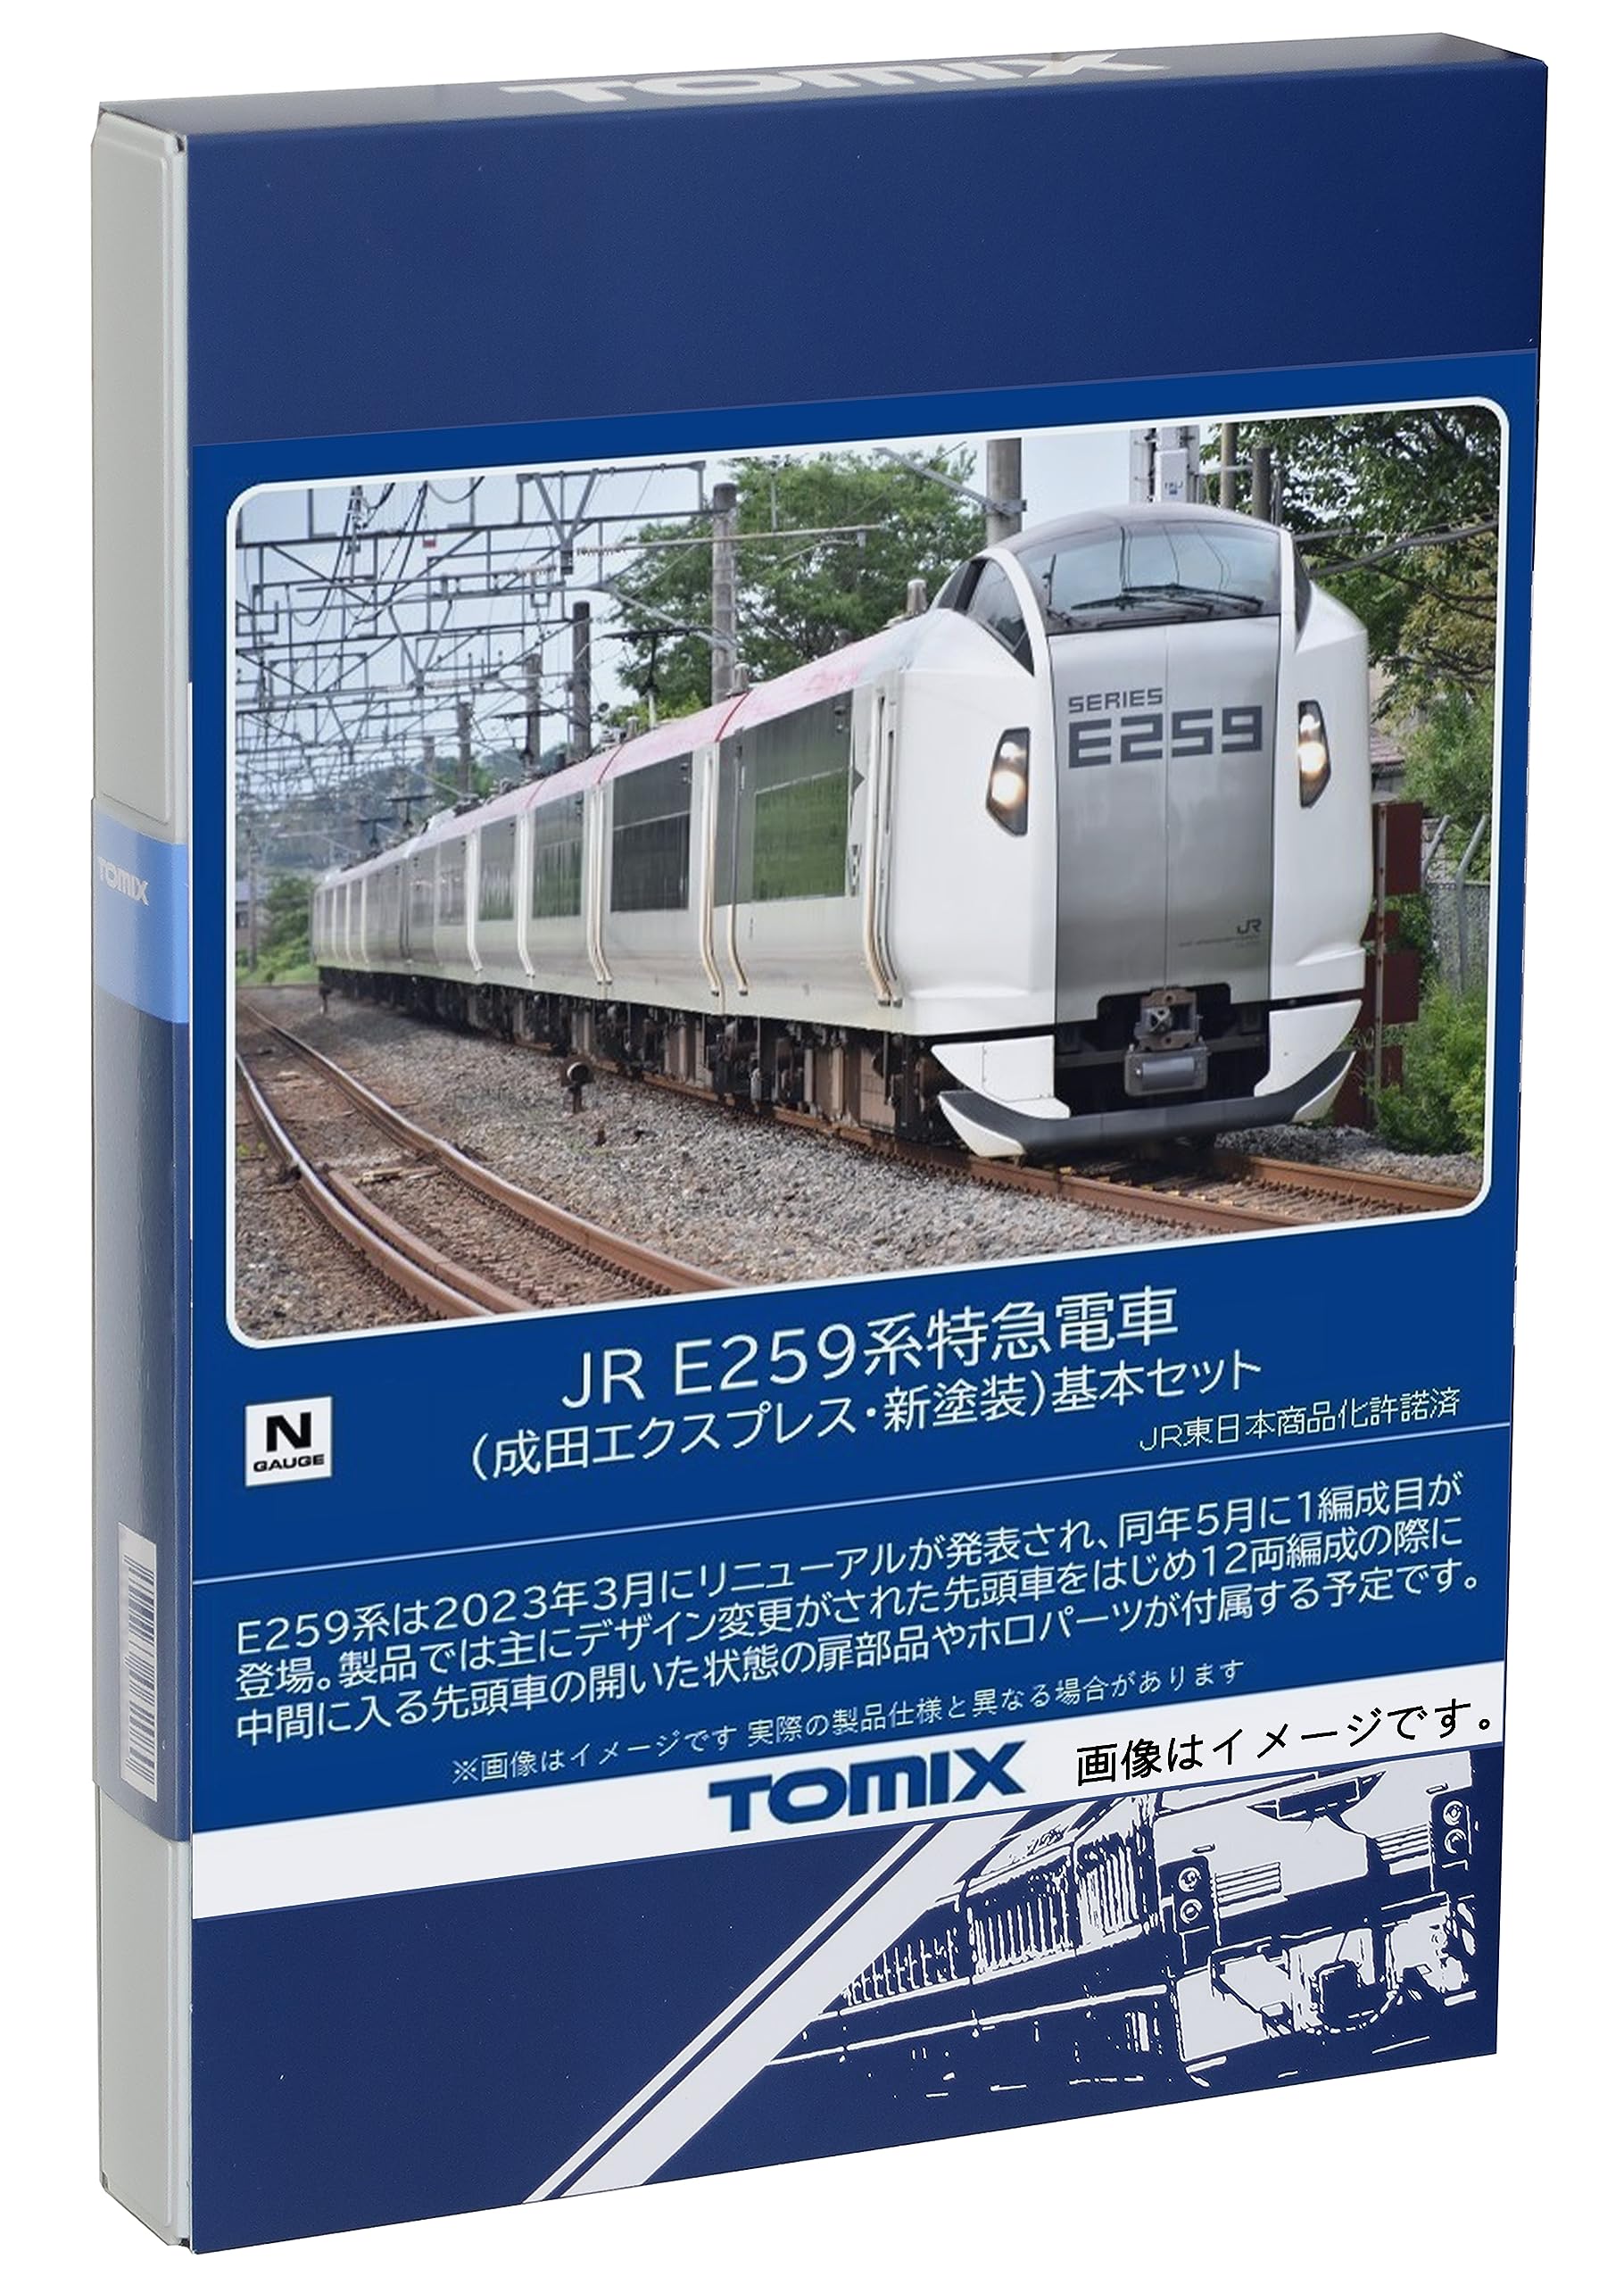 【セール在庫】TOMIX JR E259系特急電車 成田エクスプレス 基本+増結 6両セット 店舗受取可 特急形電車